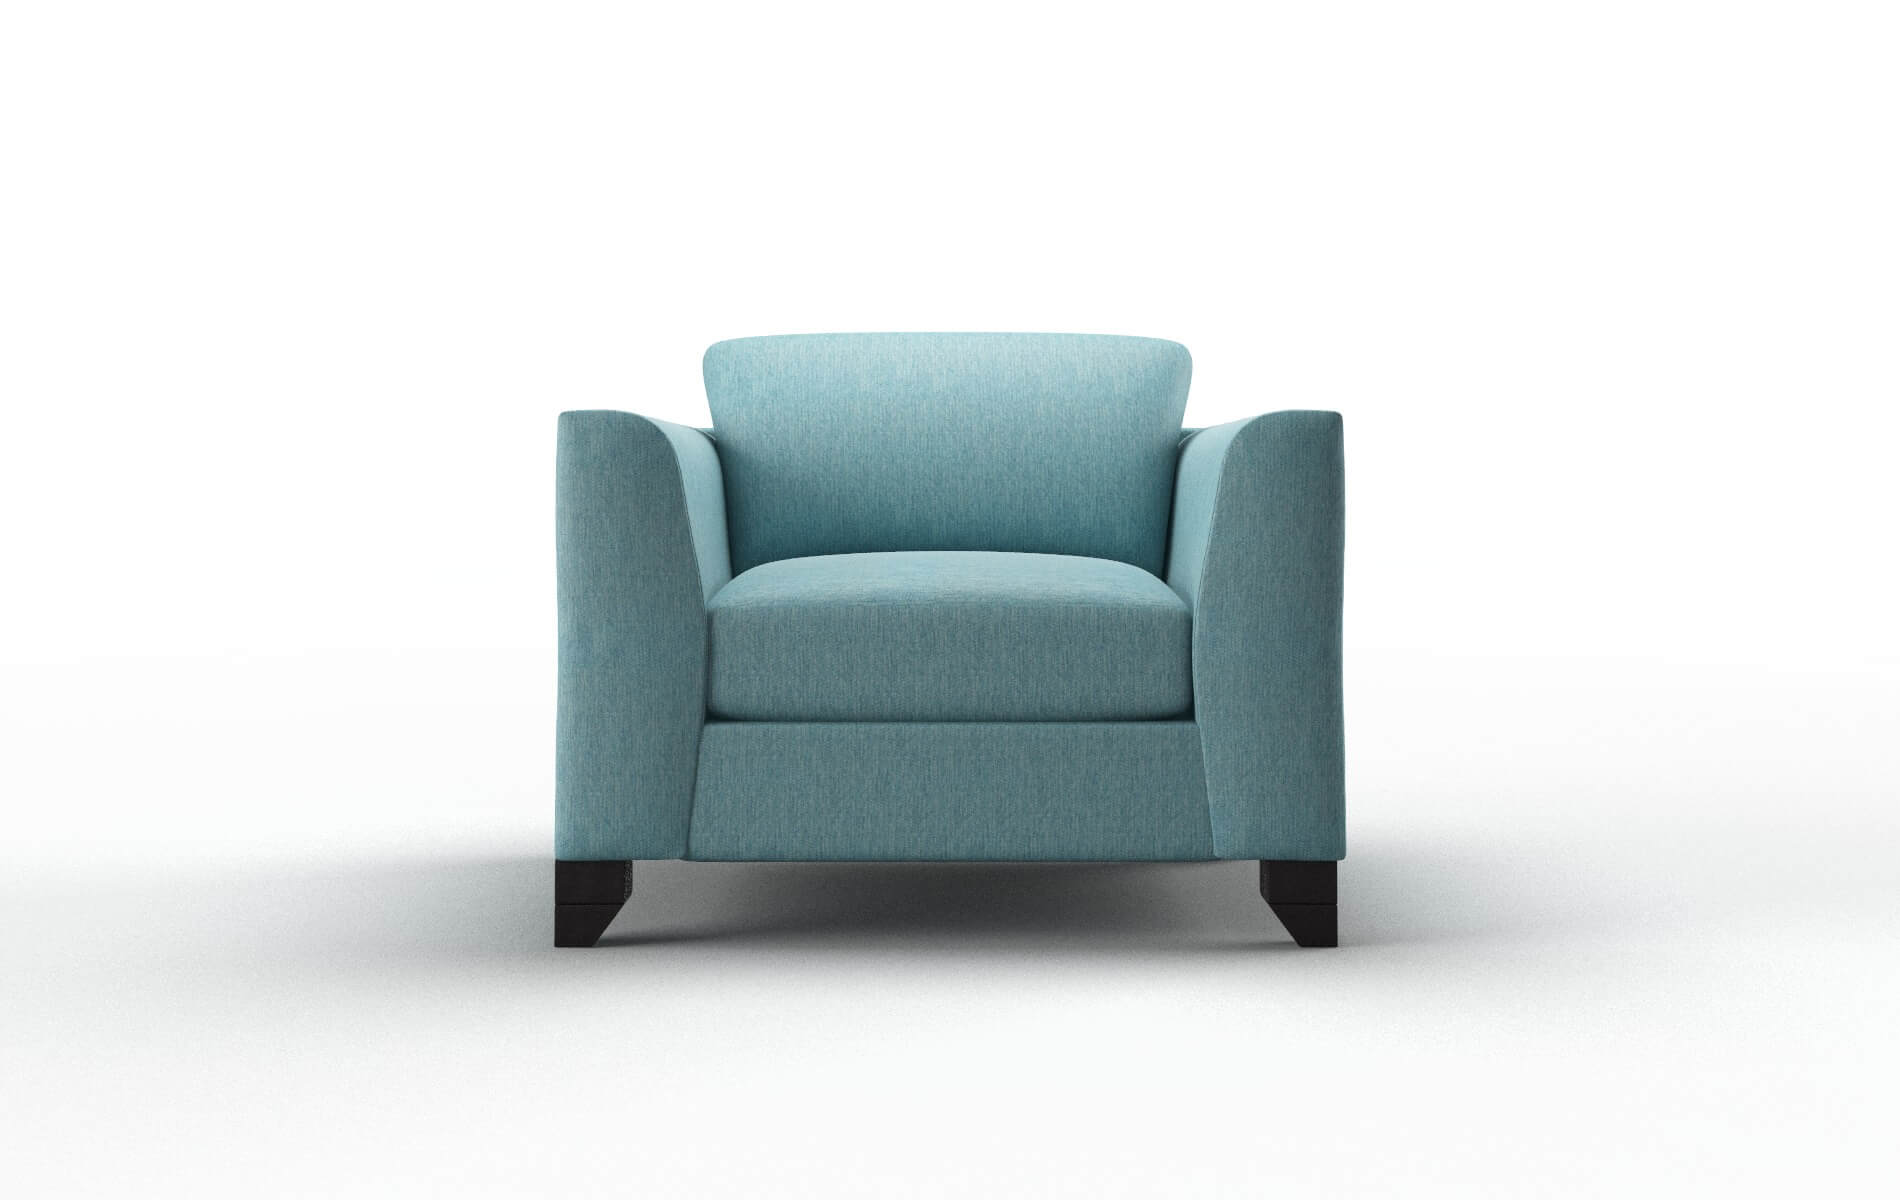 Paris Cosmo Turquoise Chair espresso legs 1